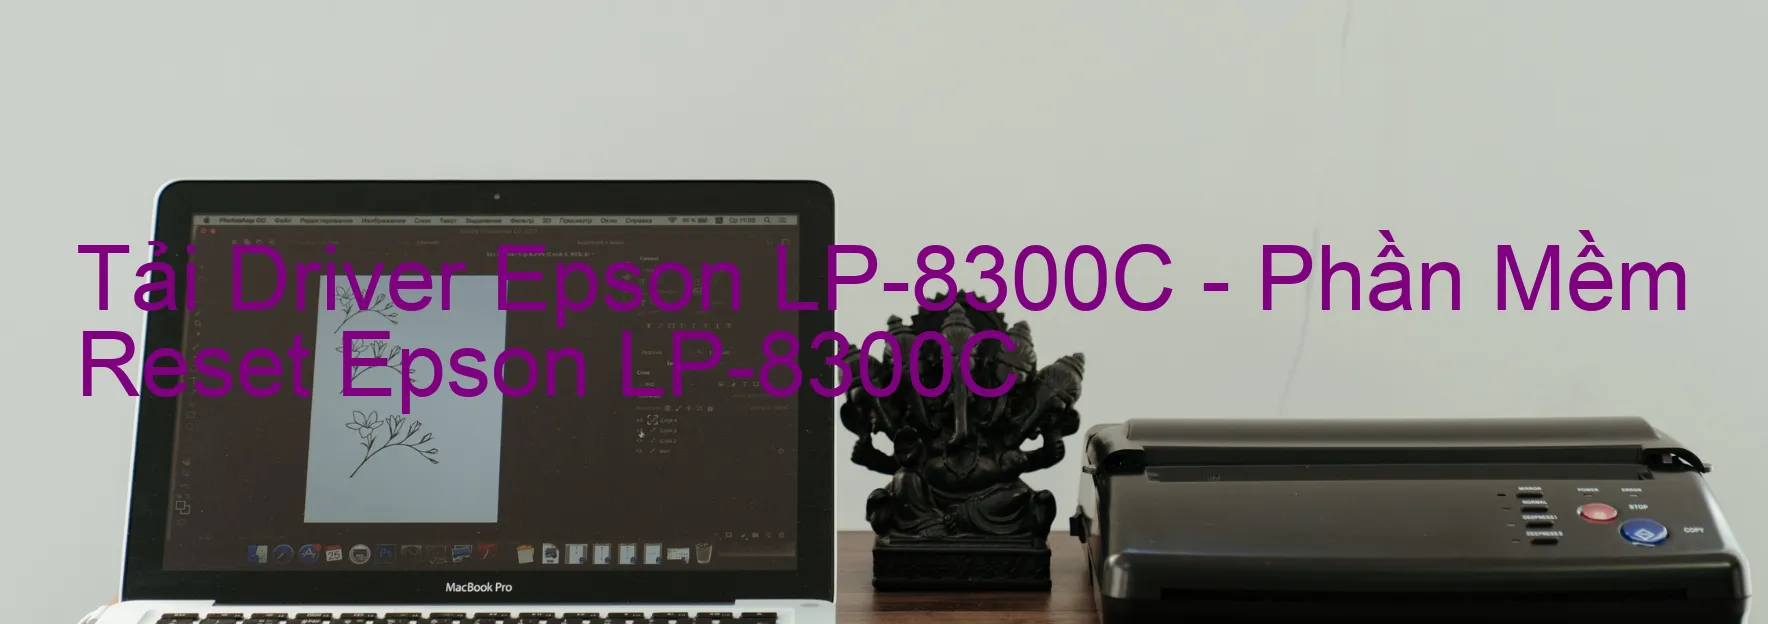 Driver Epson LP-8300C, Phần Mềm Reset Epson LP-8300C